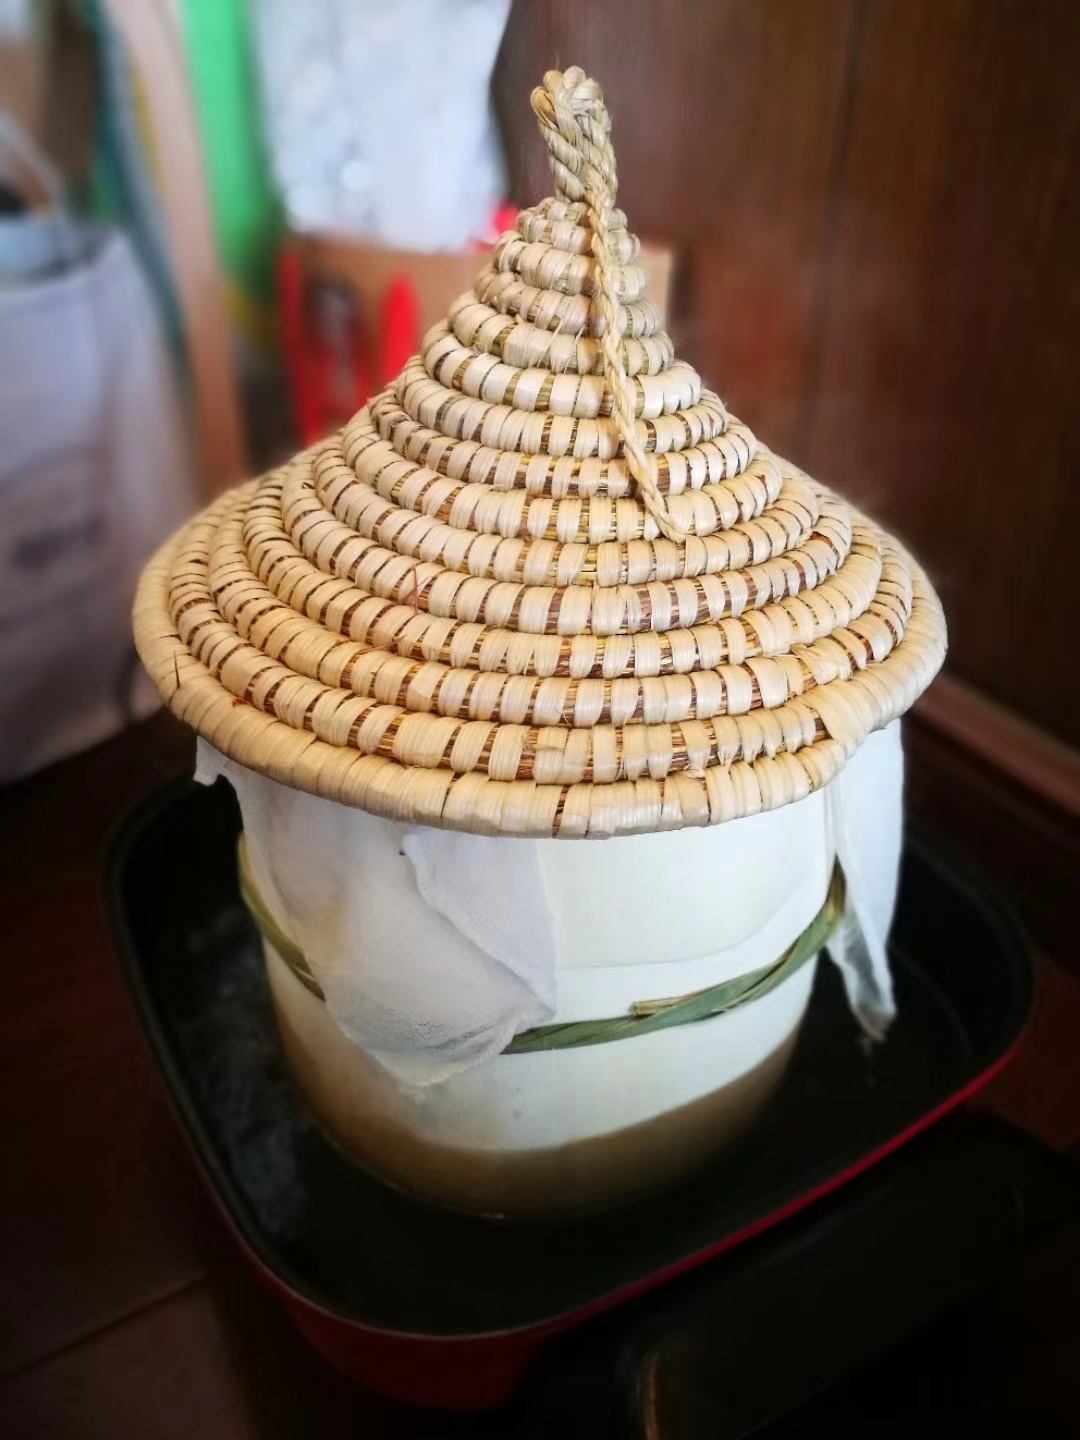 木甑子饭/蒸锅蒸饭/粒粒分明的米饭